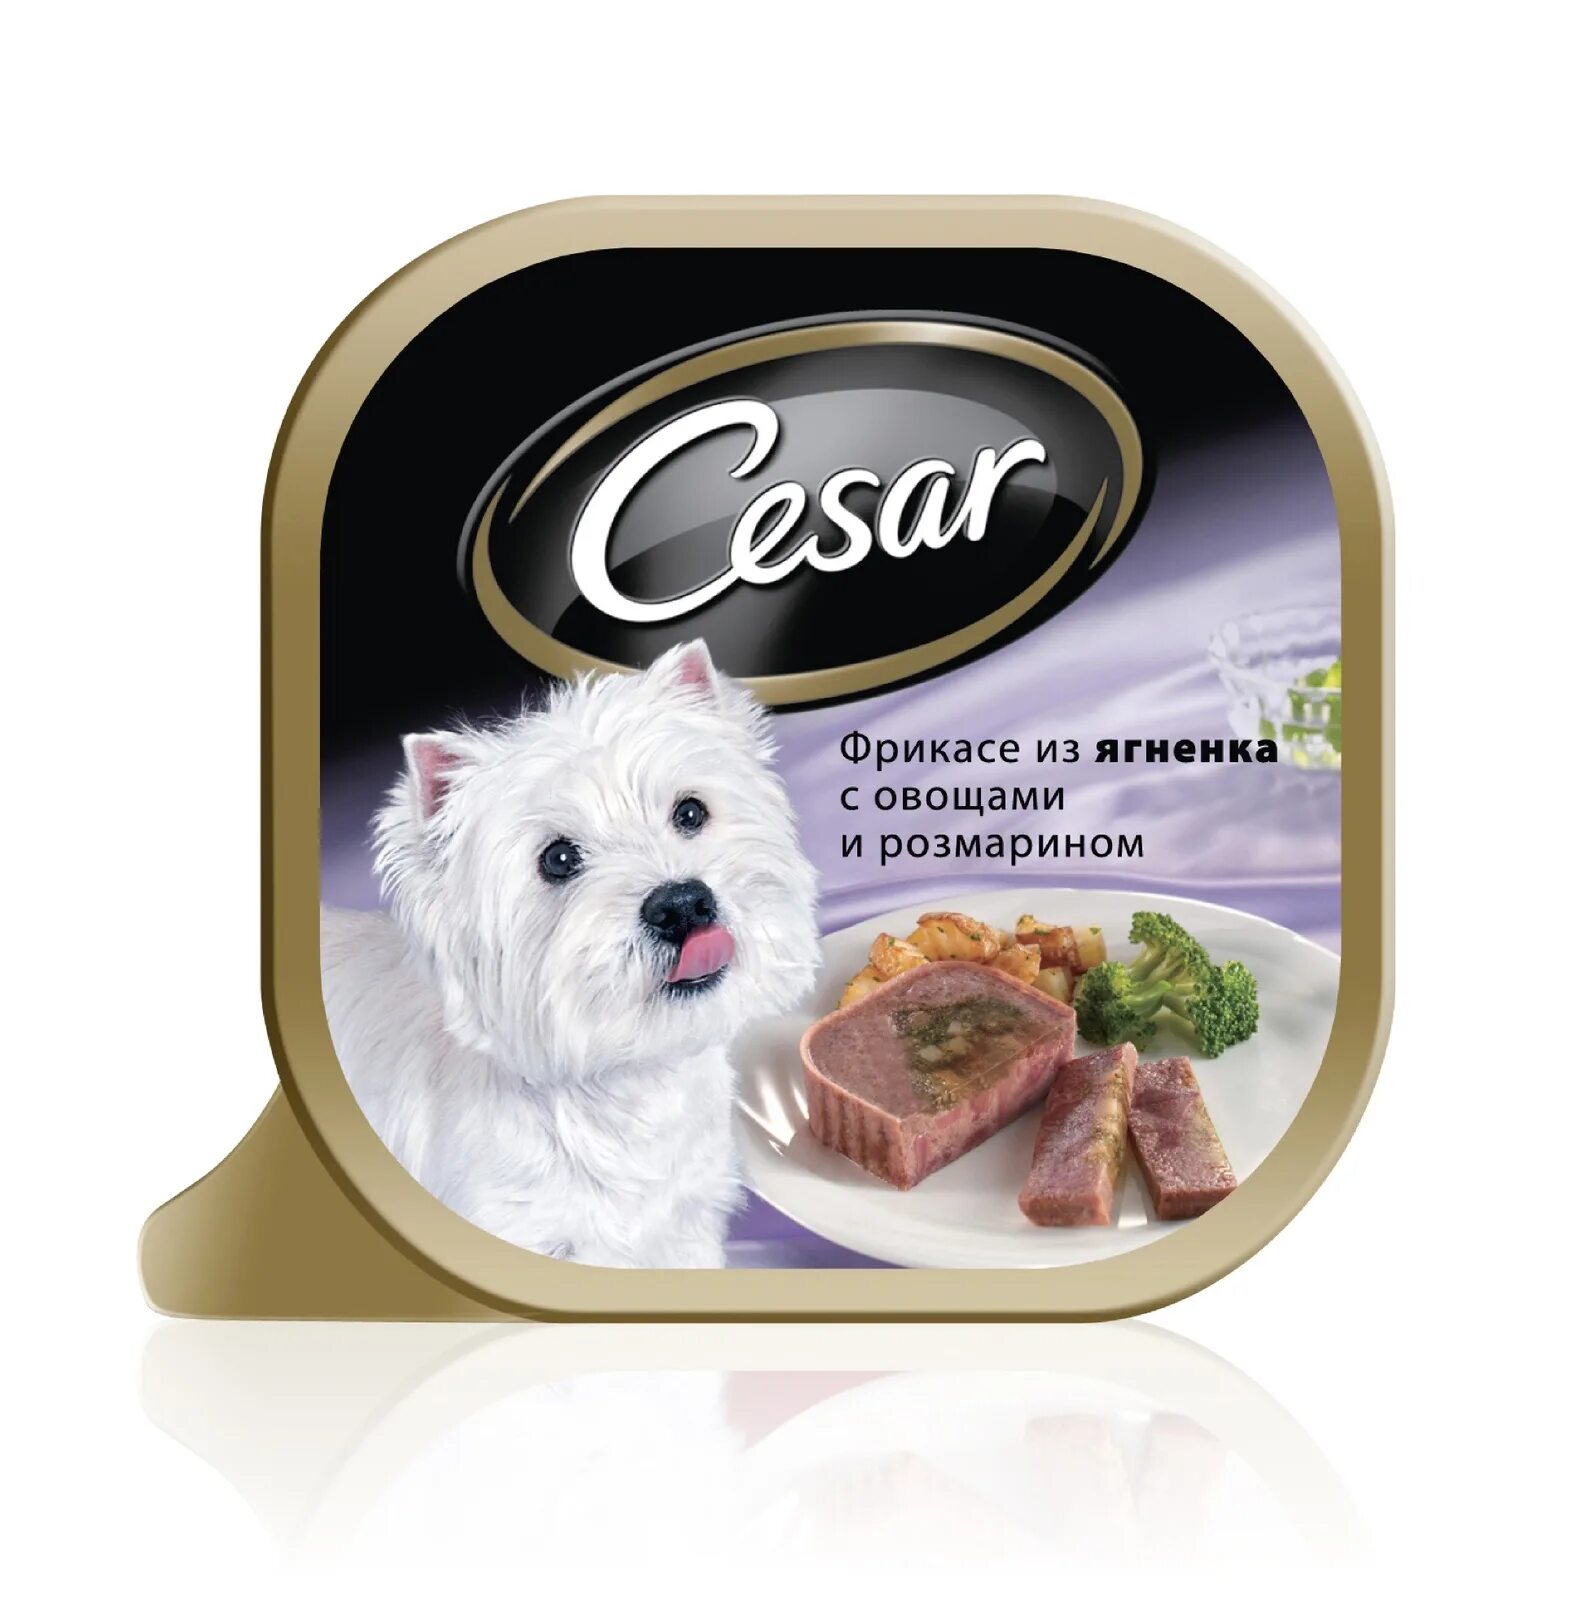 Купить корм для собаки красноярск. Влажный корм для собак Cesar из говядины с овощами 100г. Cesar консервы для собак. Влажный корм для собак Cesar.